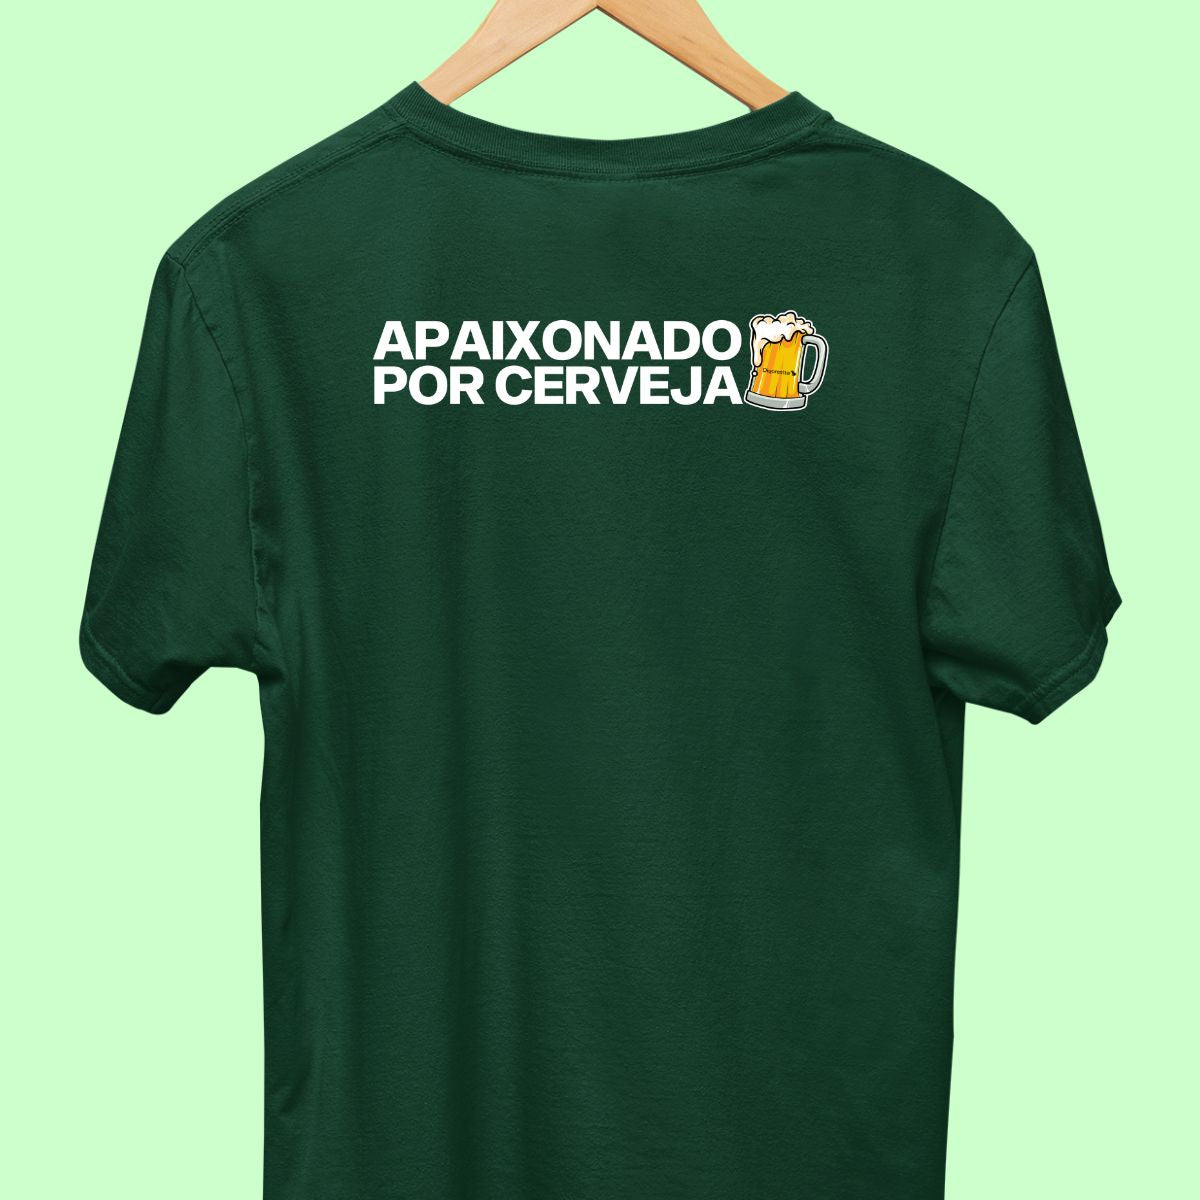 Camiseta de casal com a frase "apaixonado por cerveja." masculina verde.